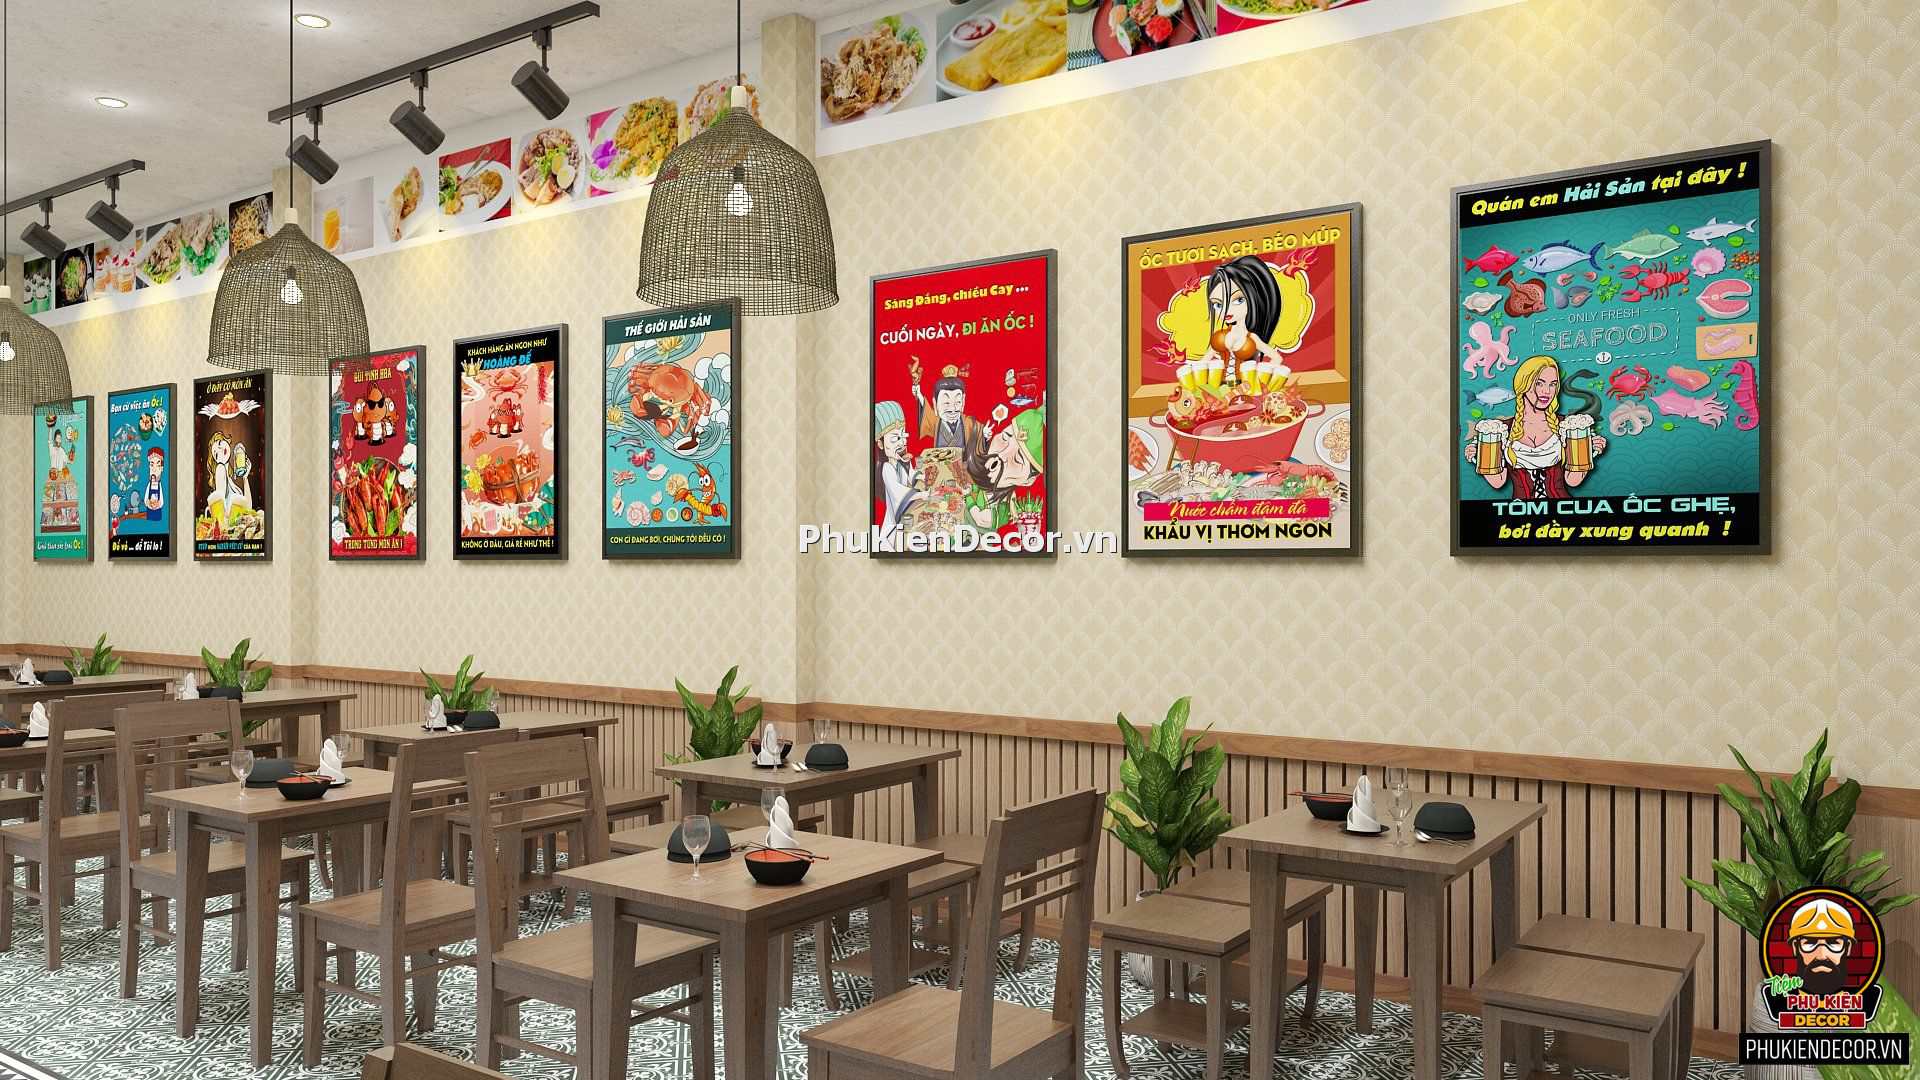 Quán Nhậu không chỉ là nơi để uống và ăn uống mà còn là một nơi để tận hưởng những bức tranh treo tường độc đáo. Hình ảnh này sẽ giúp bạn khám phá những bức tranh tuyệt vời này.